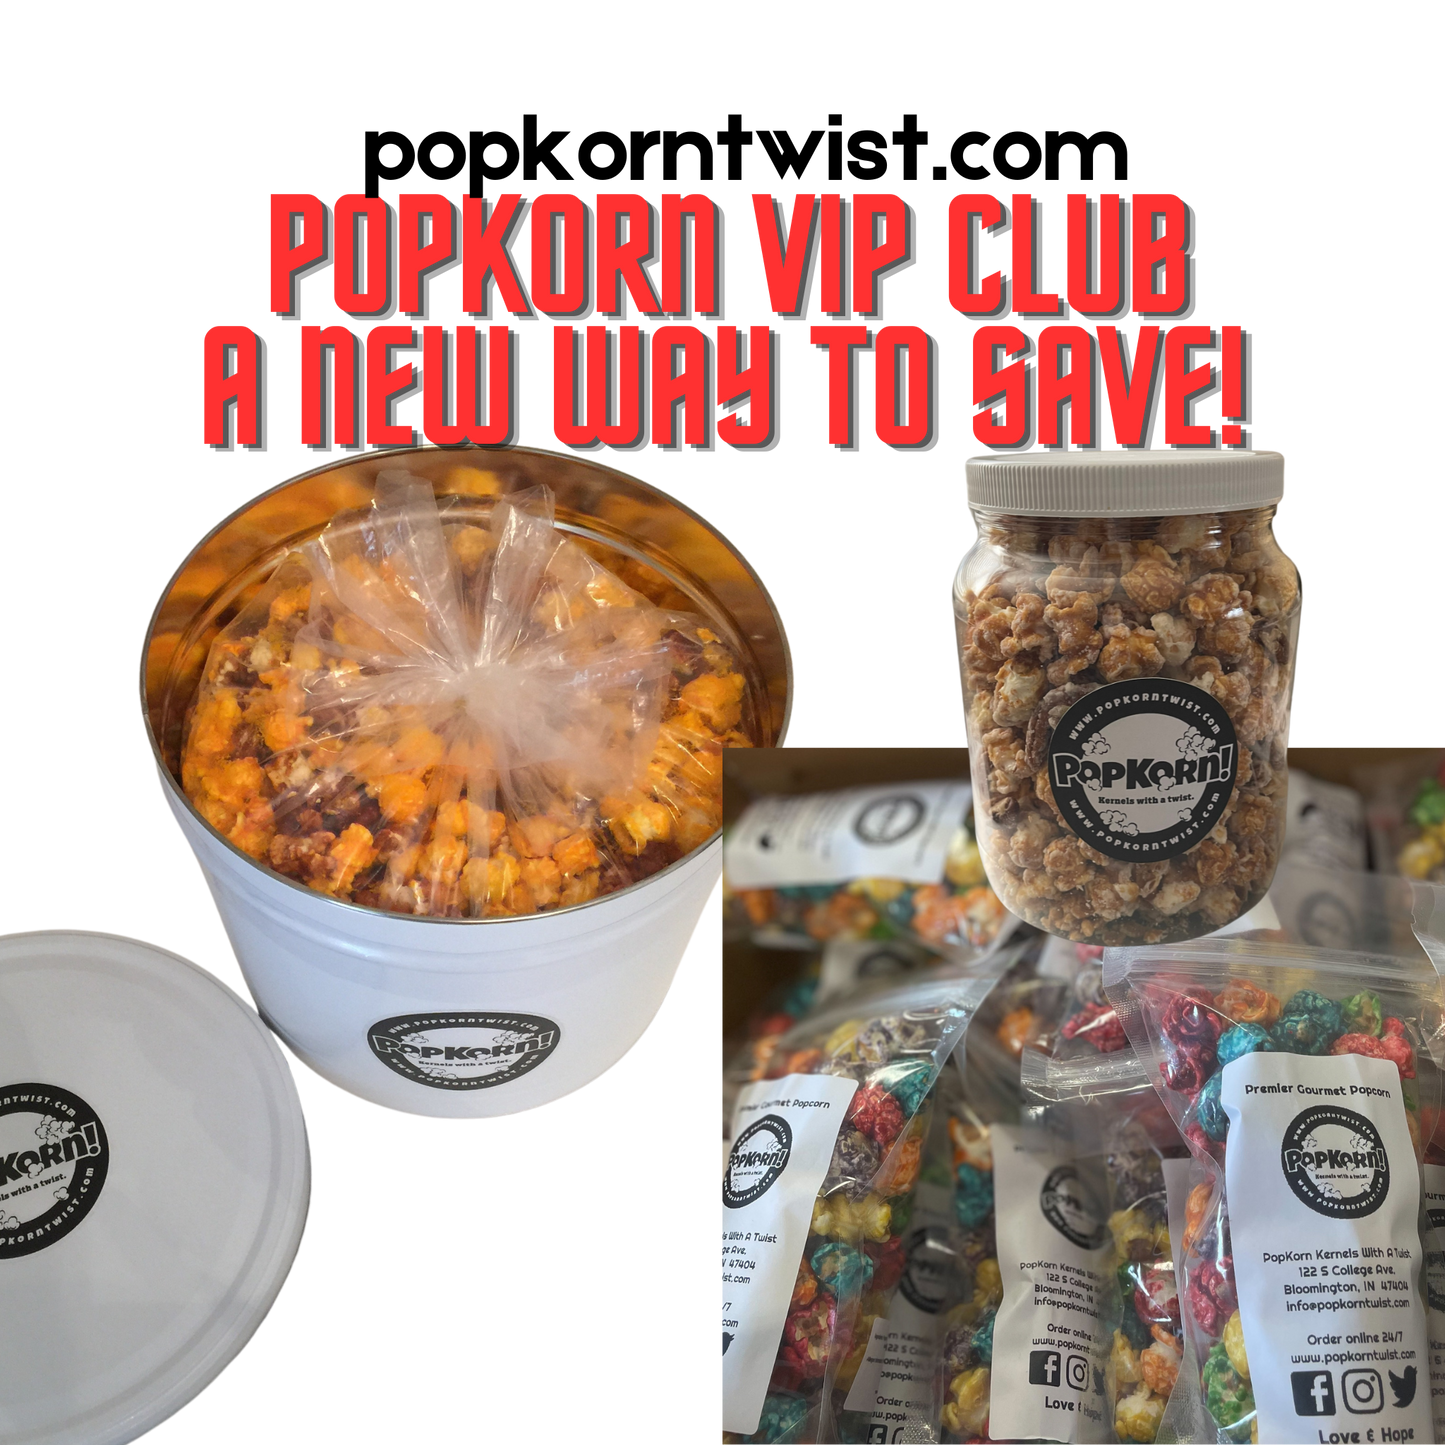 VIP PopKorn Club - save big $$$